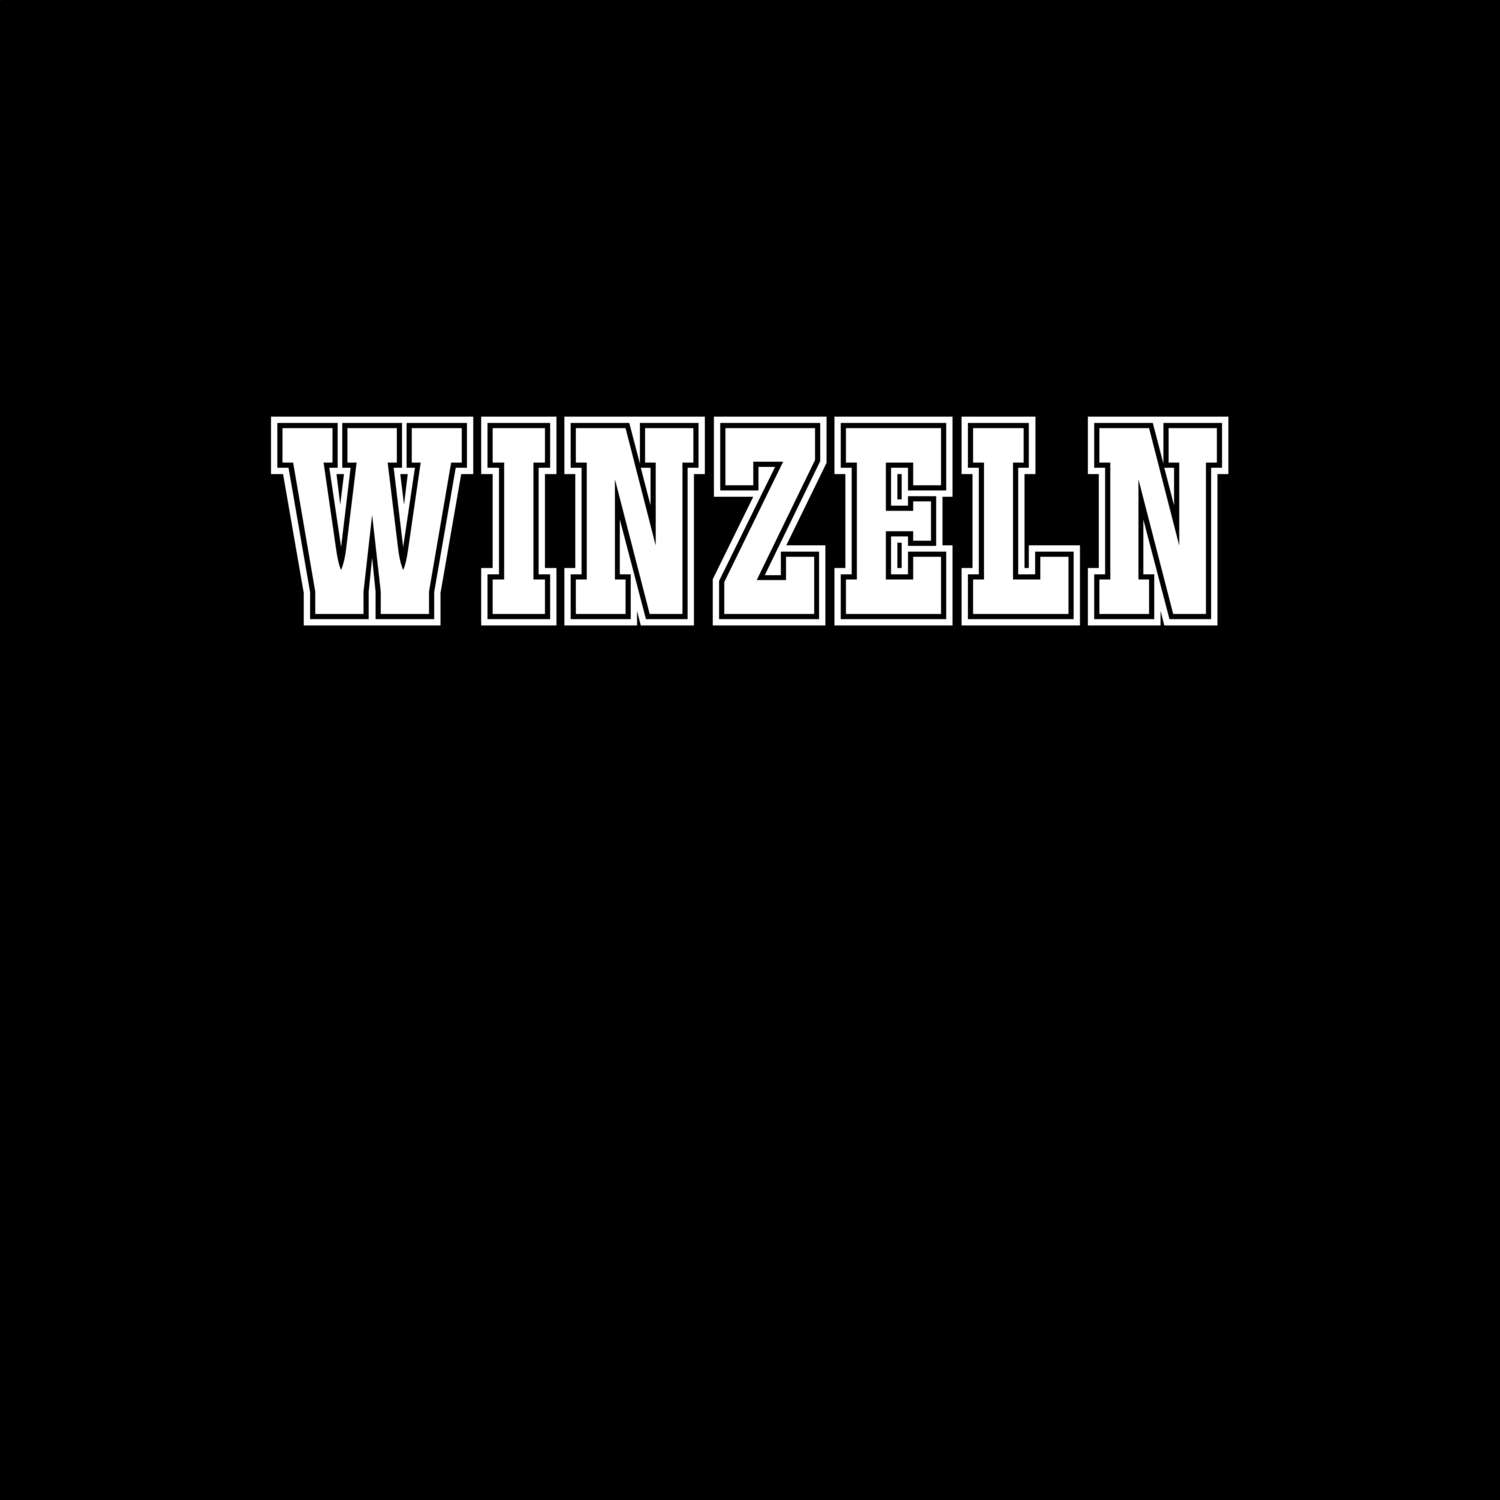 Winzeln T-Shirt »Classic«